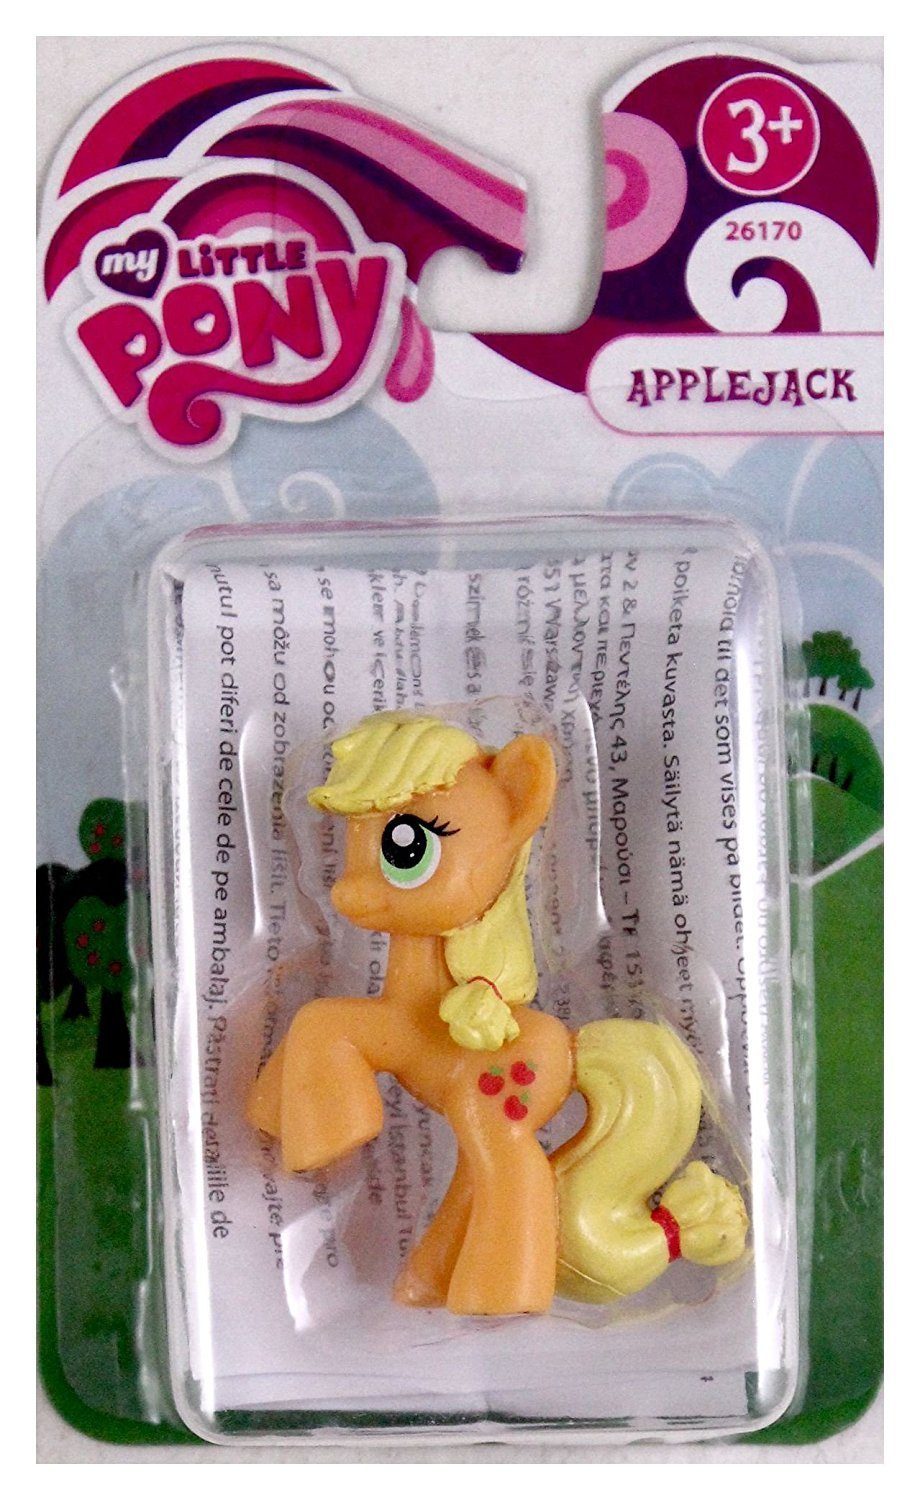 ca. 5cm Pony - Applejack Spielfigur Little Little My Pony 26170 My